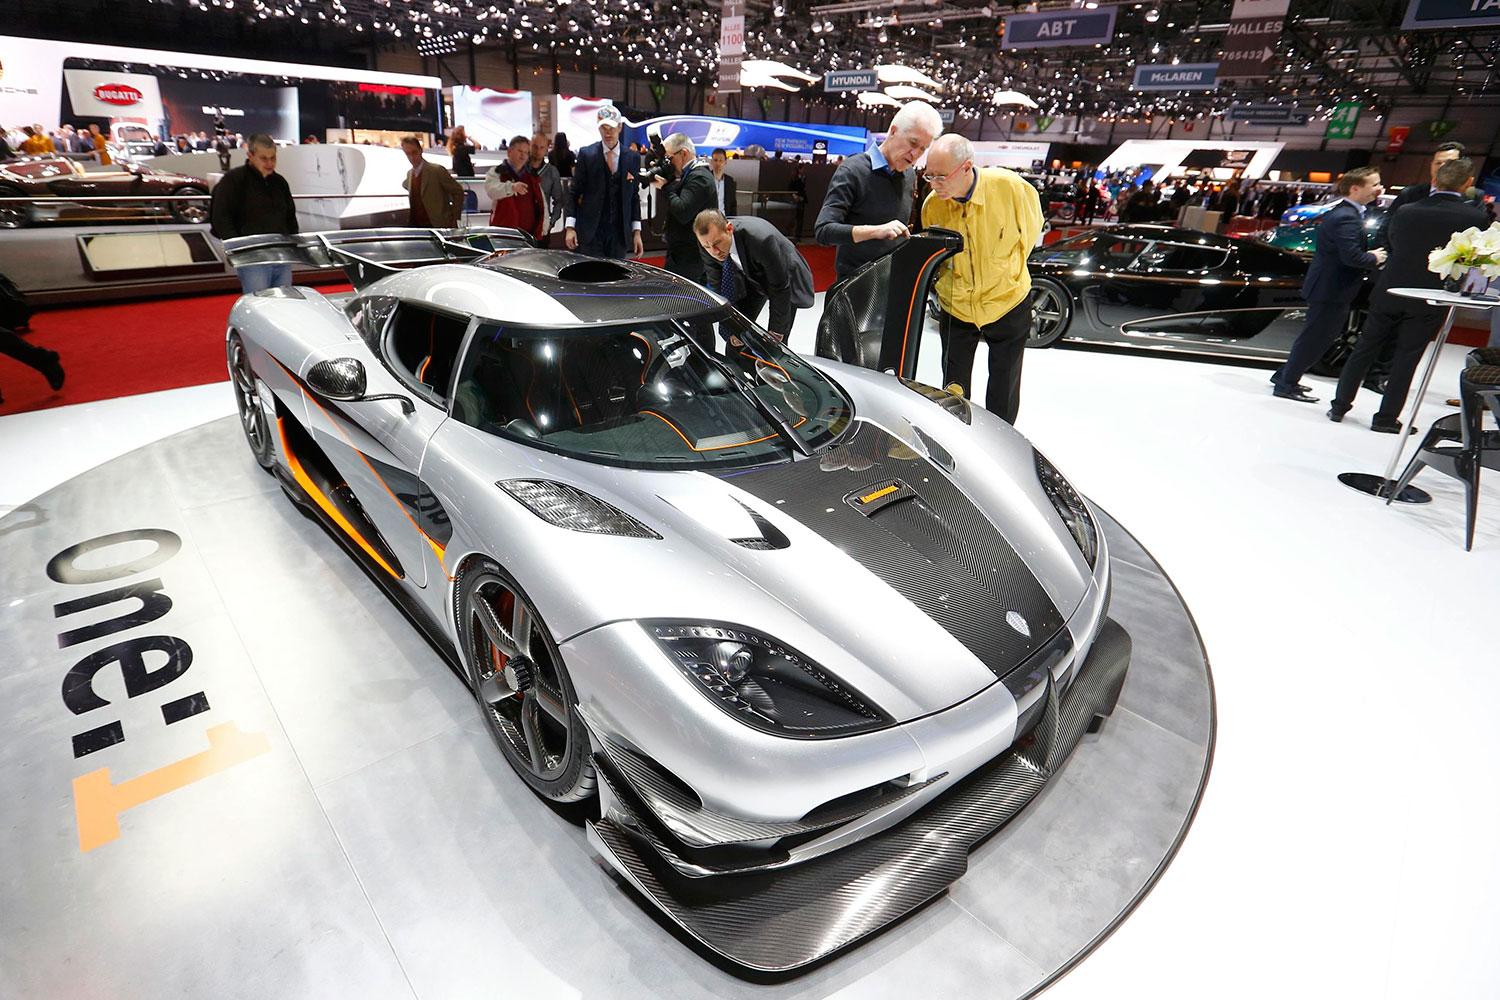 La firma sueca, Koenisegg, presenta en el Salón de Ginebra el coche más rápido del mercado